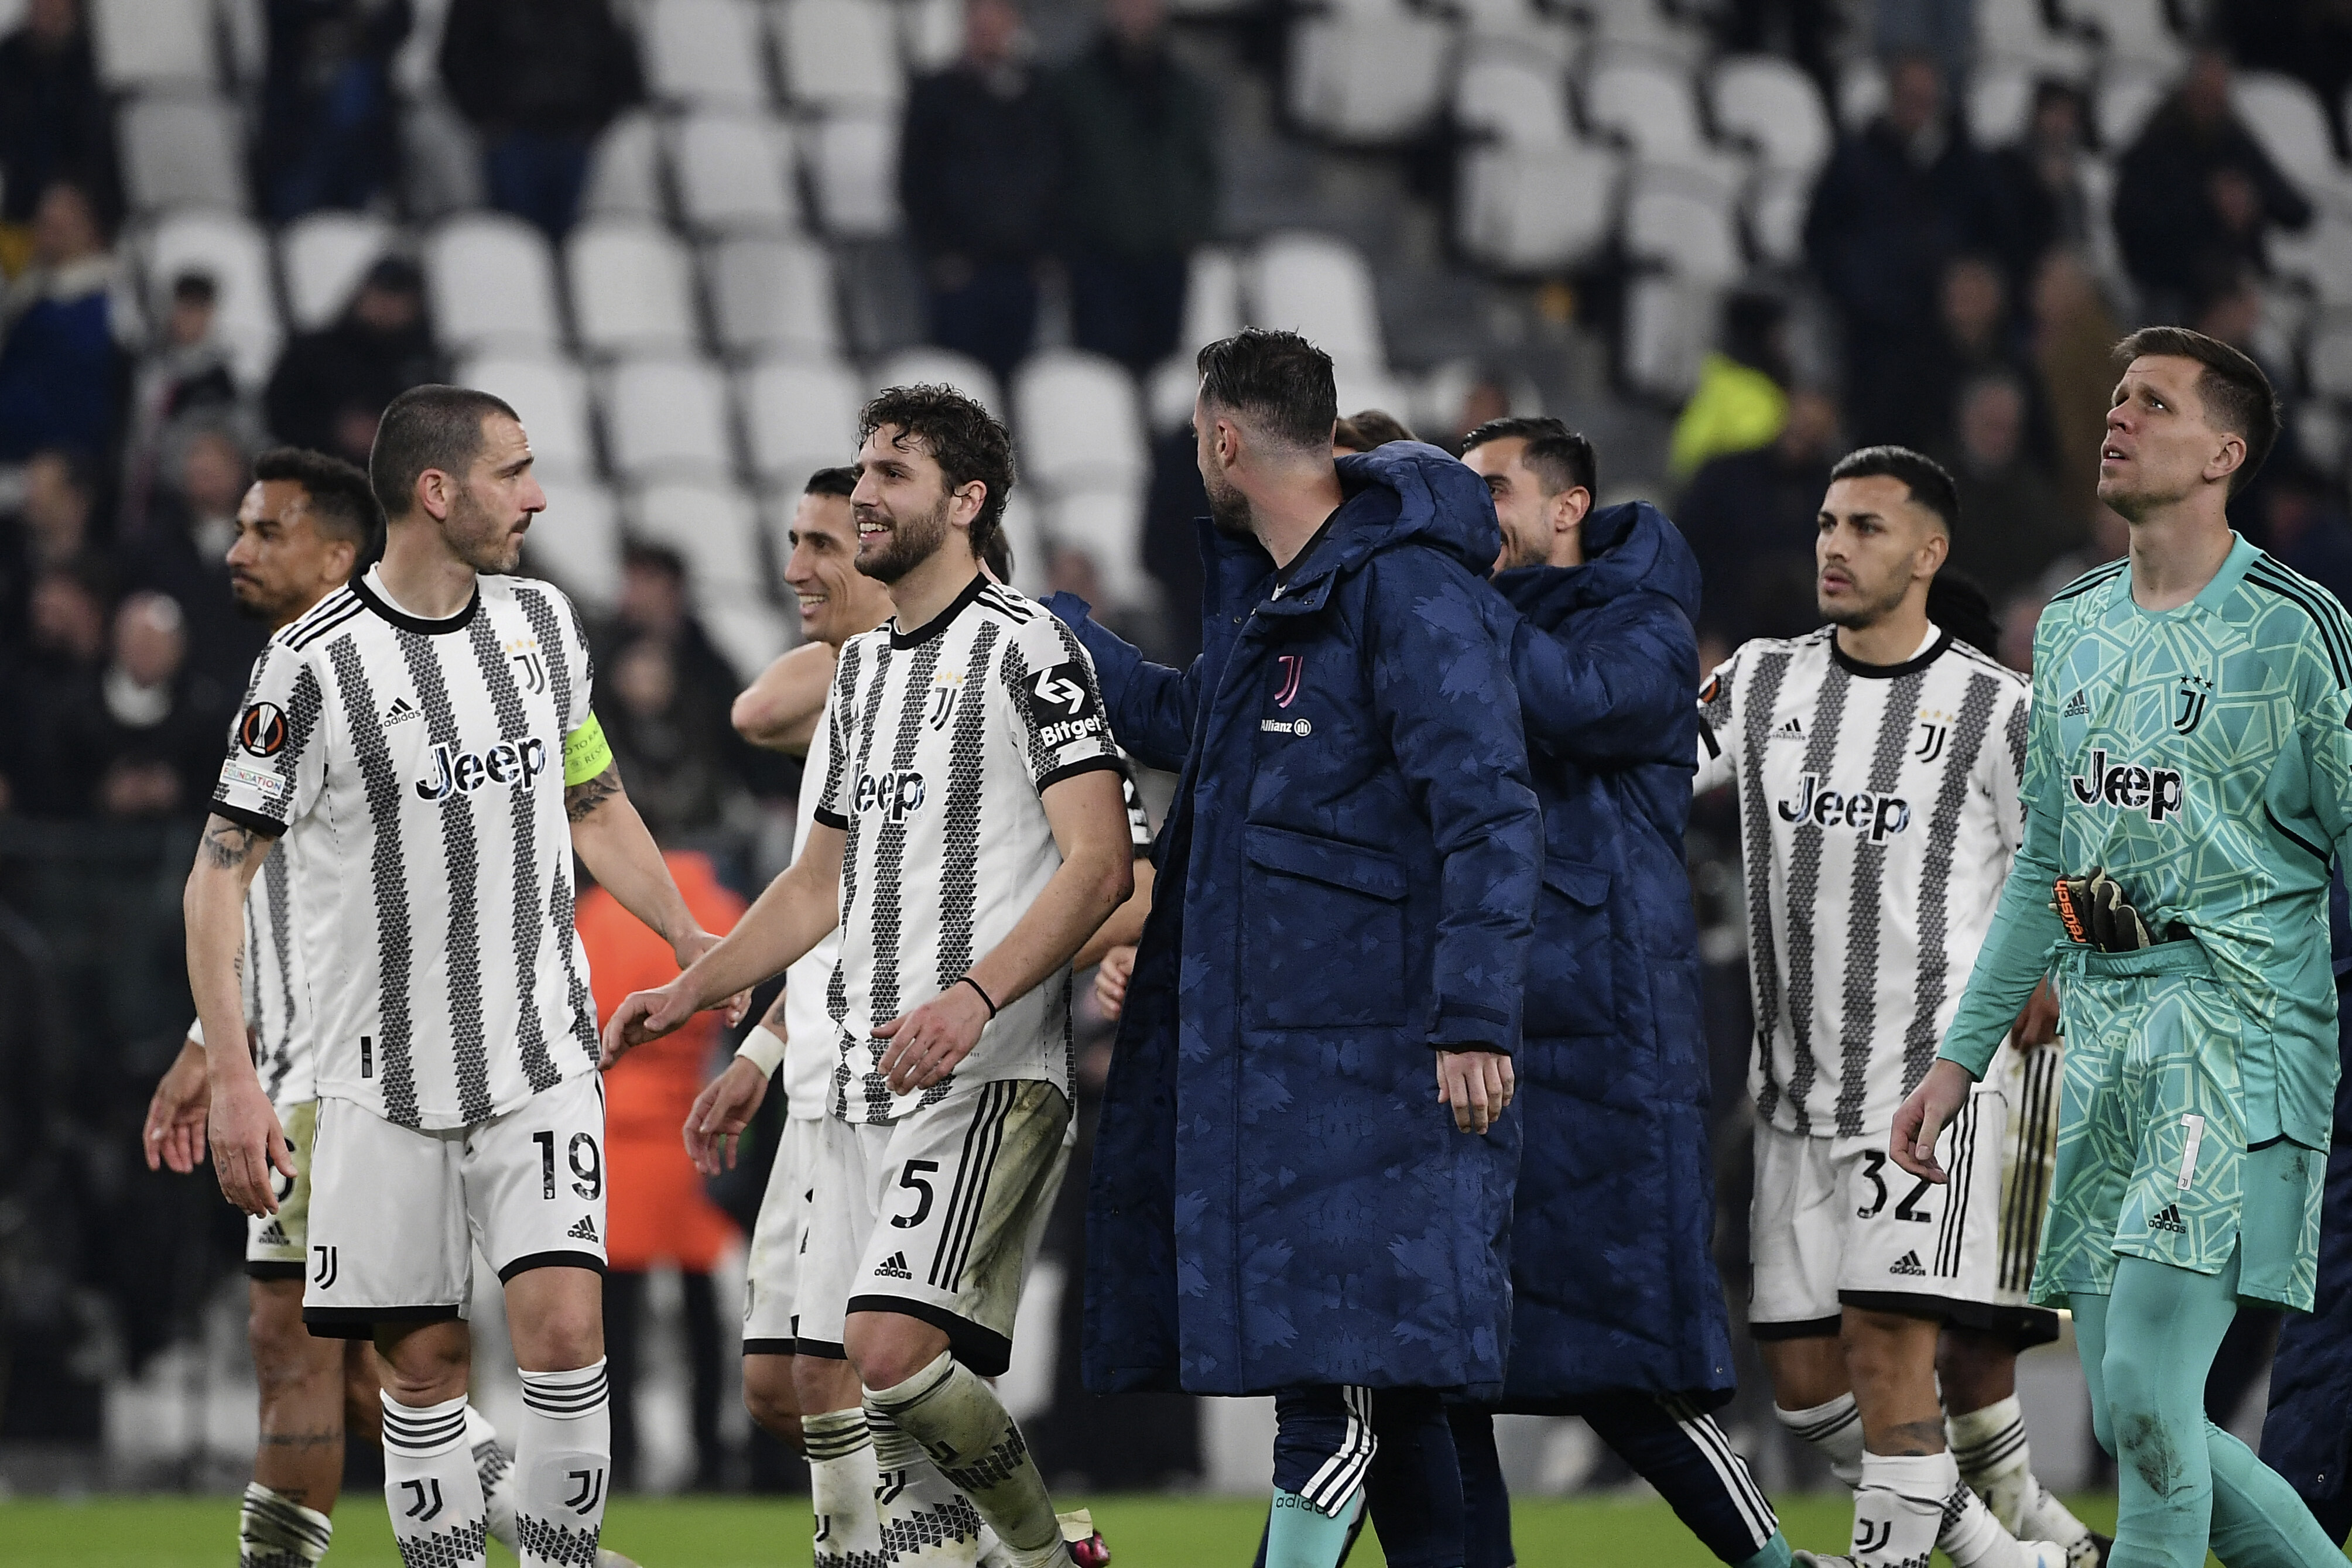 Inter, Juventus